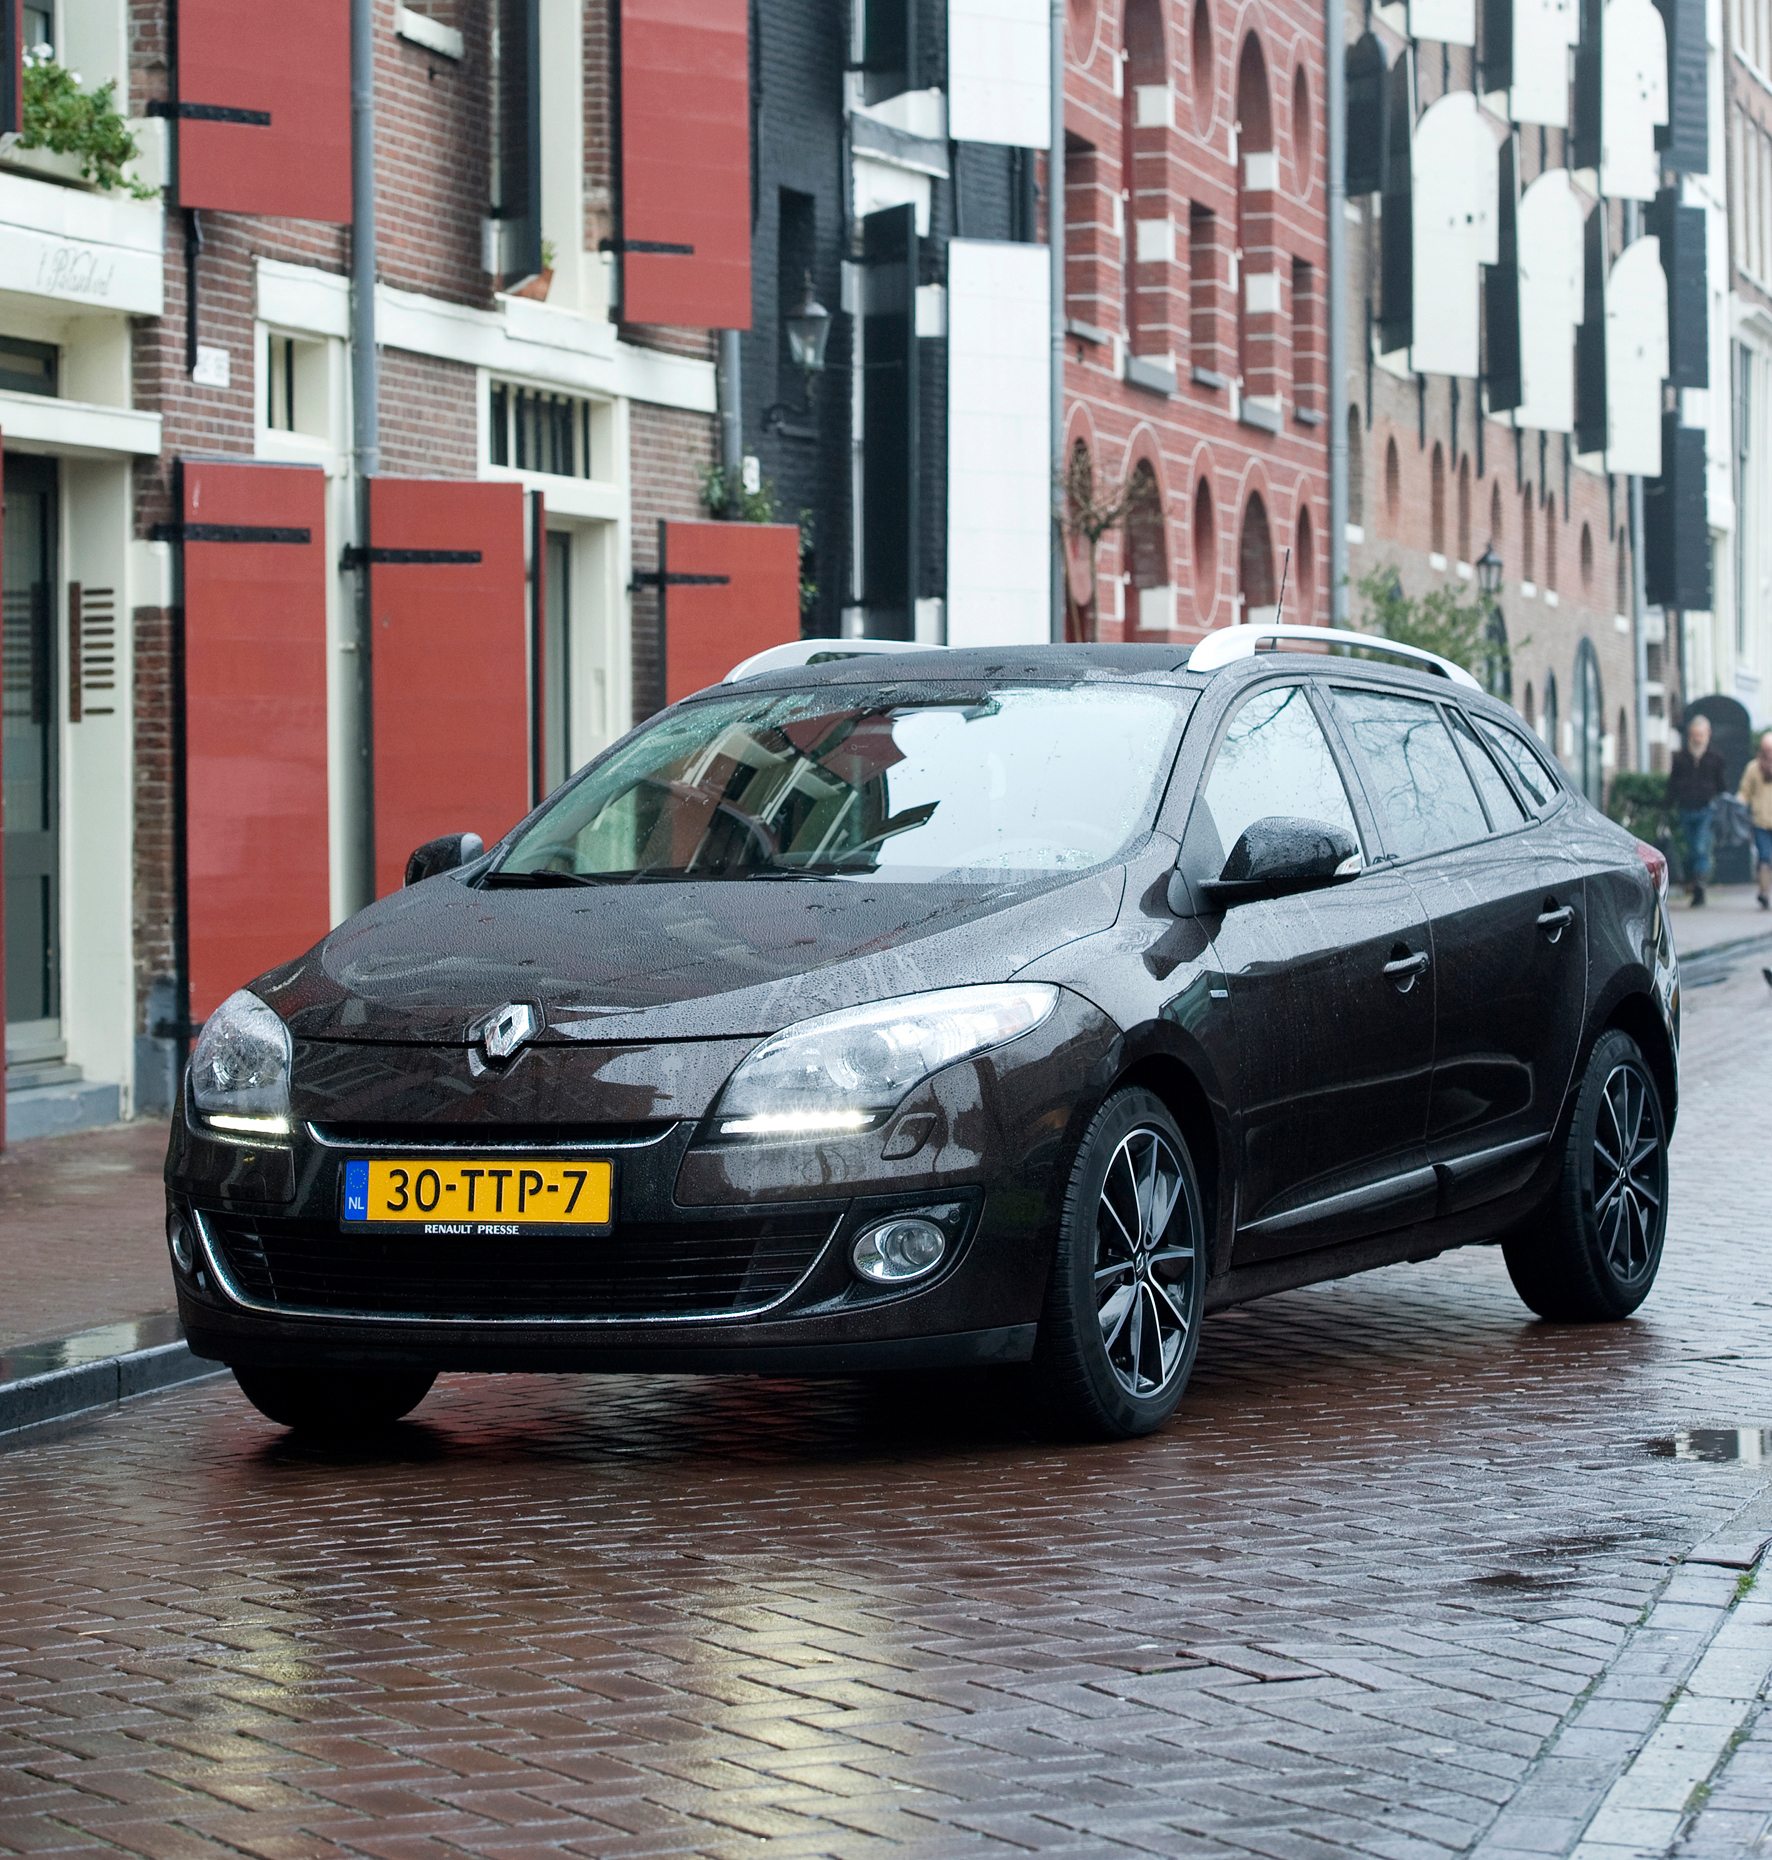 Regulatie Flikkeren Datum Renault Mégane bestverkochte auto van Nederland in 2012